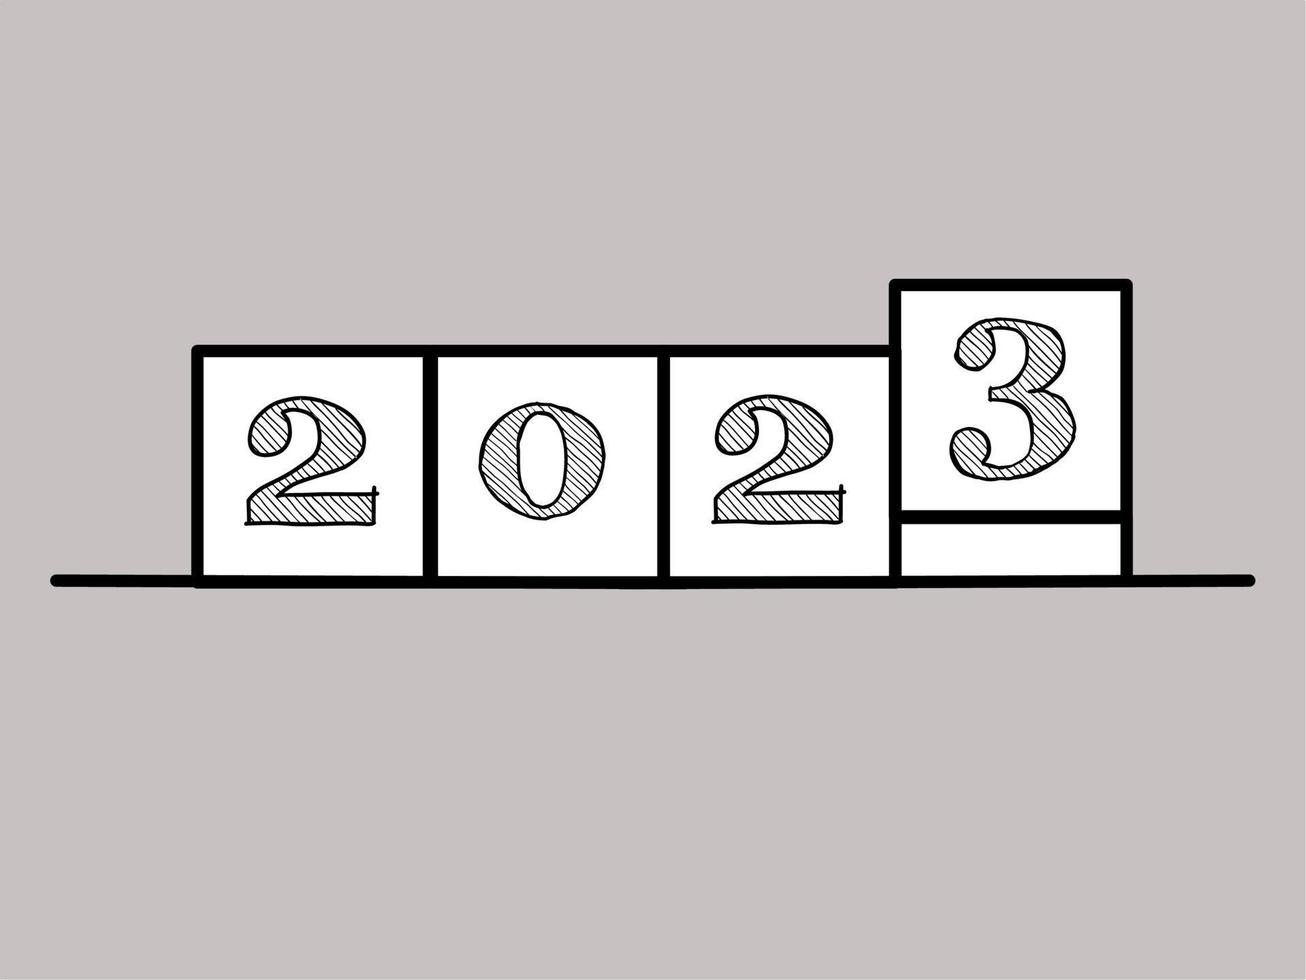 contento nuovo anno 2023, illustrazione design con eleganza concetto vettore